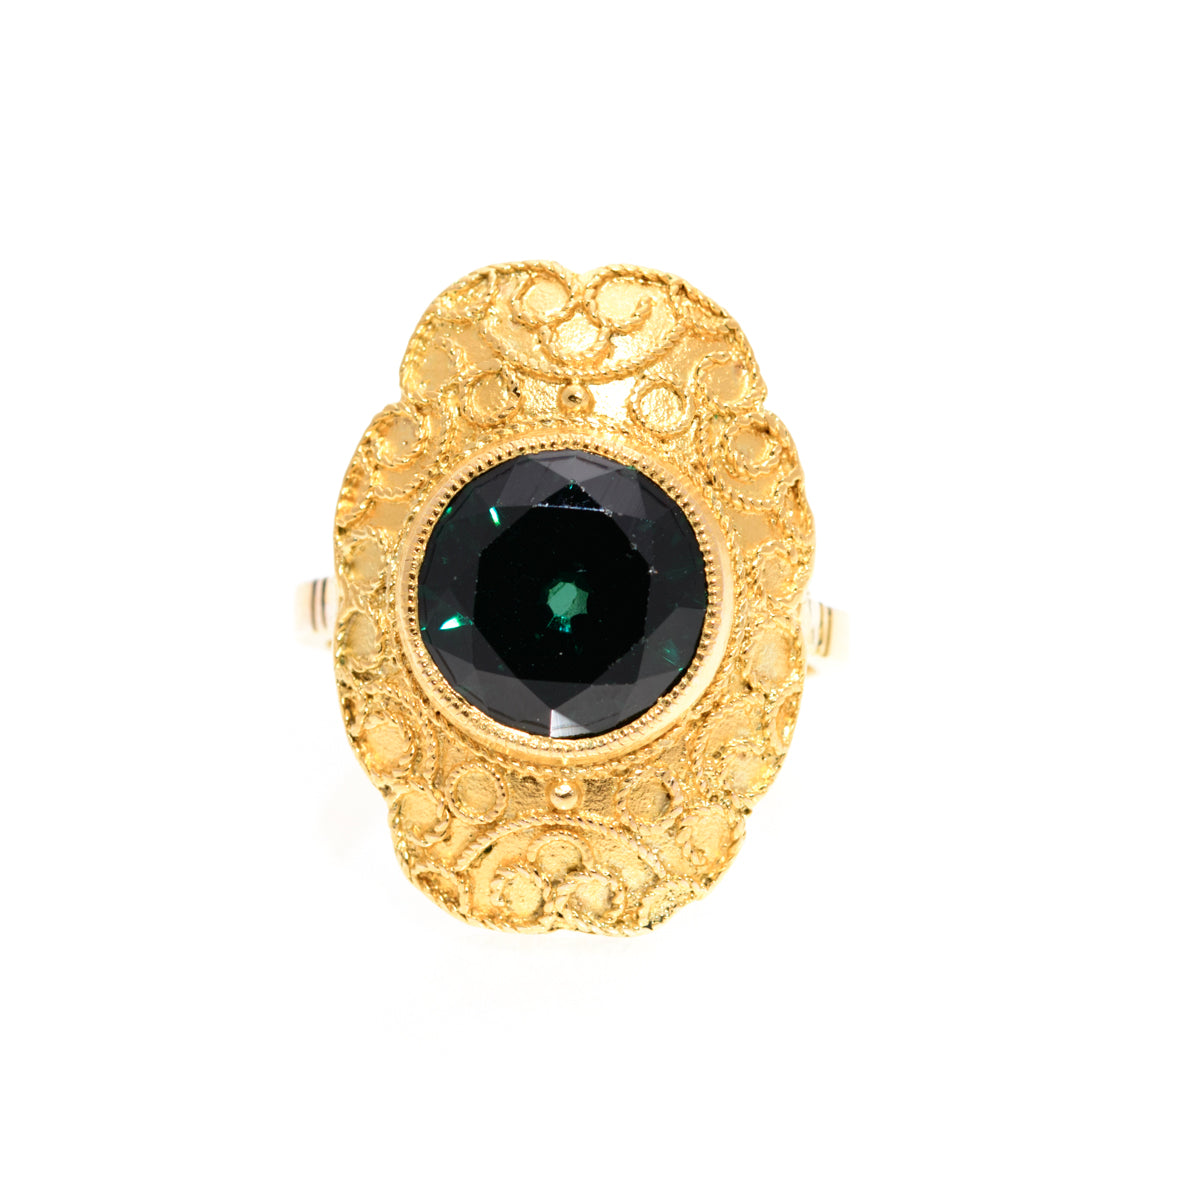 Vintage 14ct Yellow Gold & Green Tsavorite Garnet Gemstone Ring UK Size M (A1439)